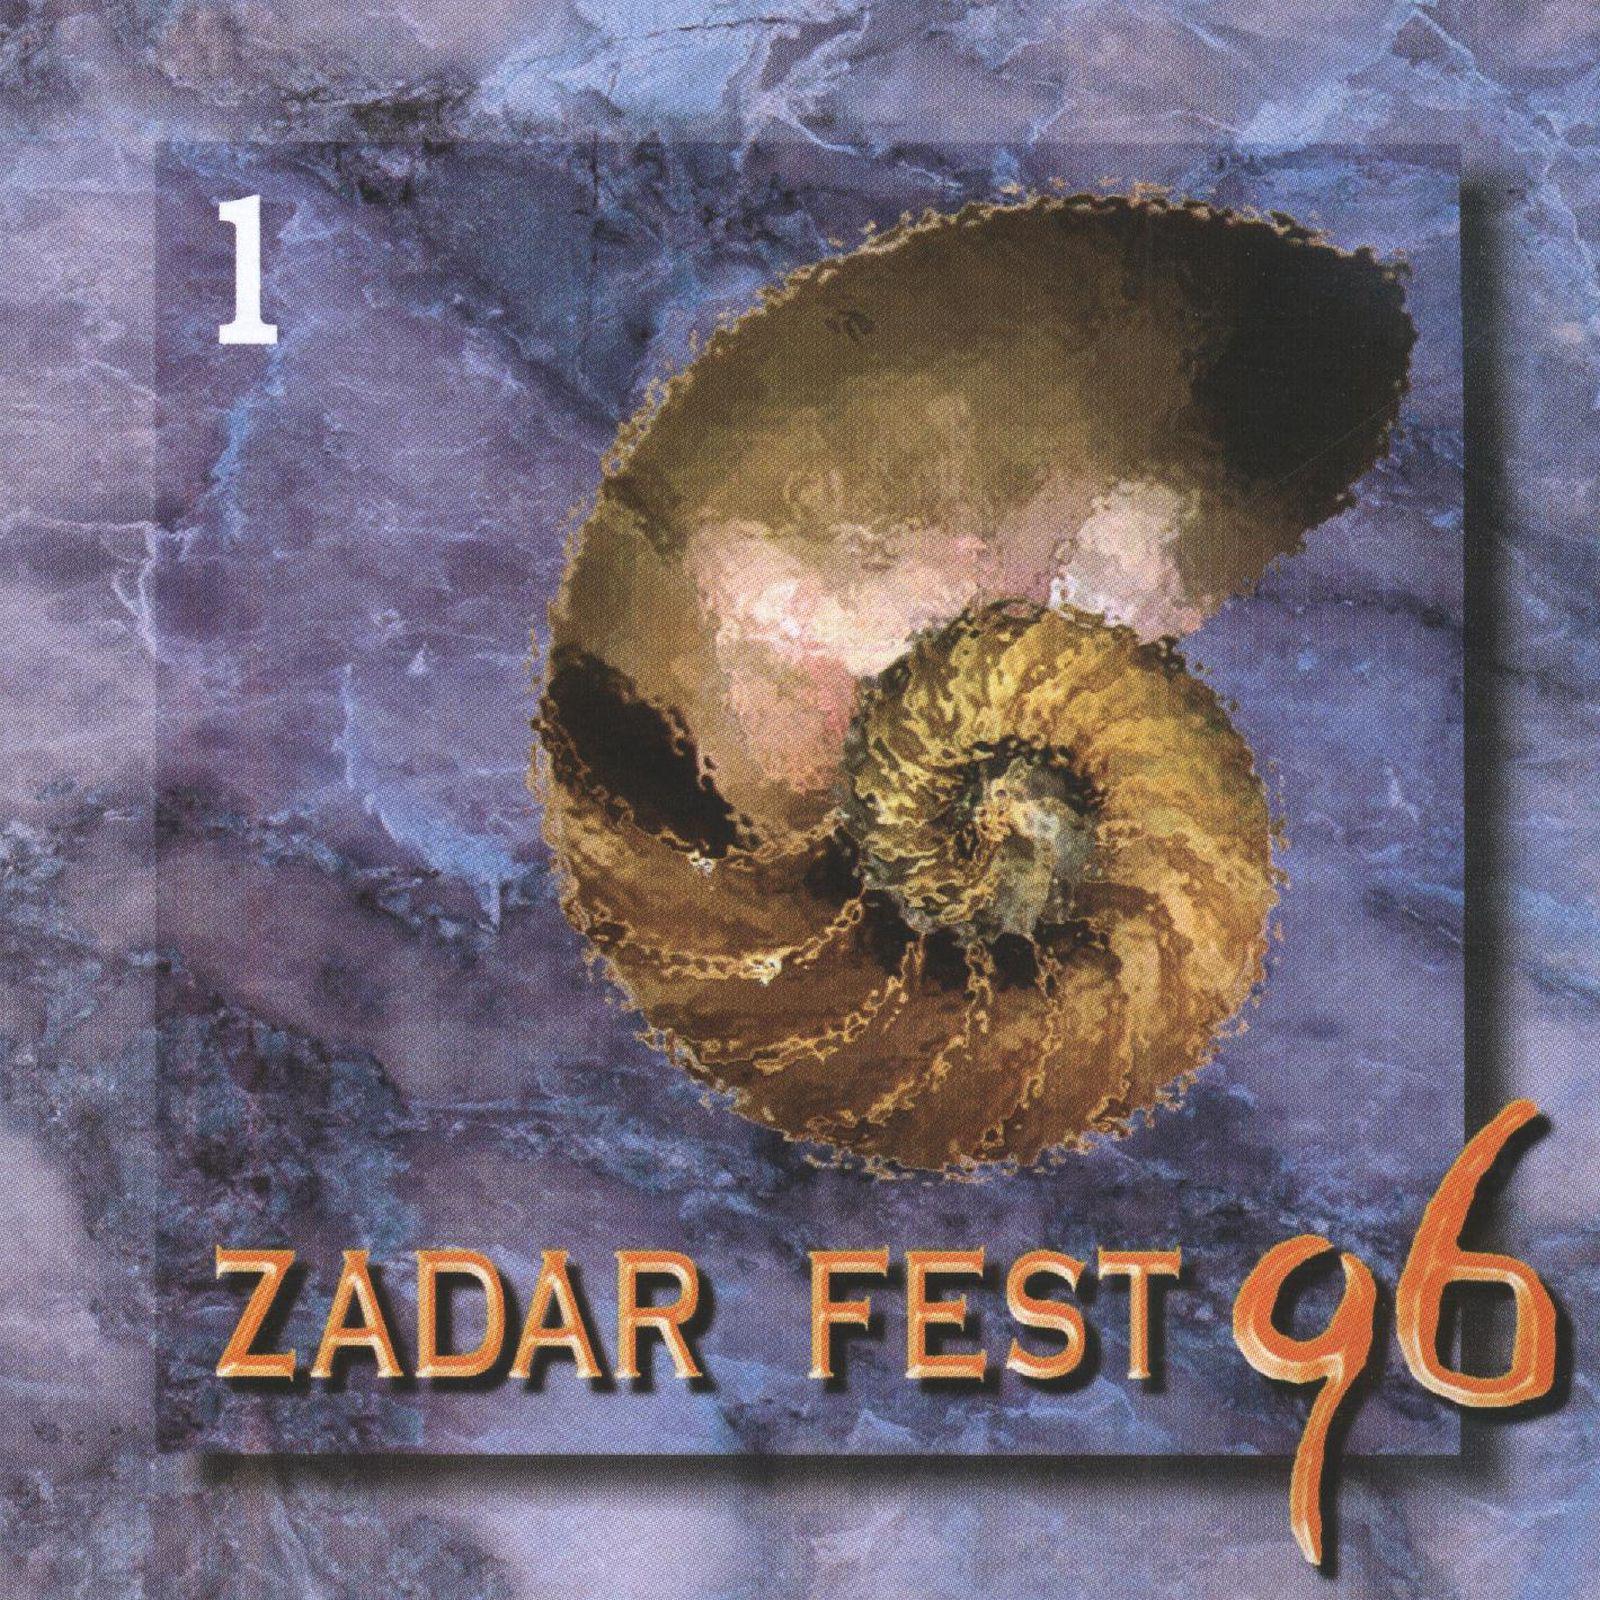 Zadarfest '96, 1